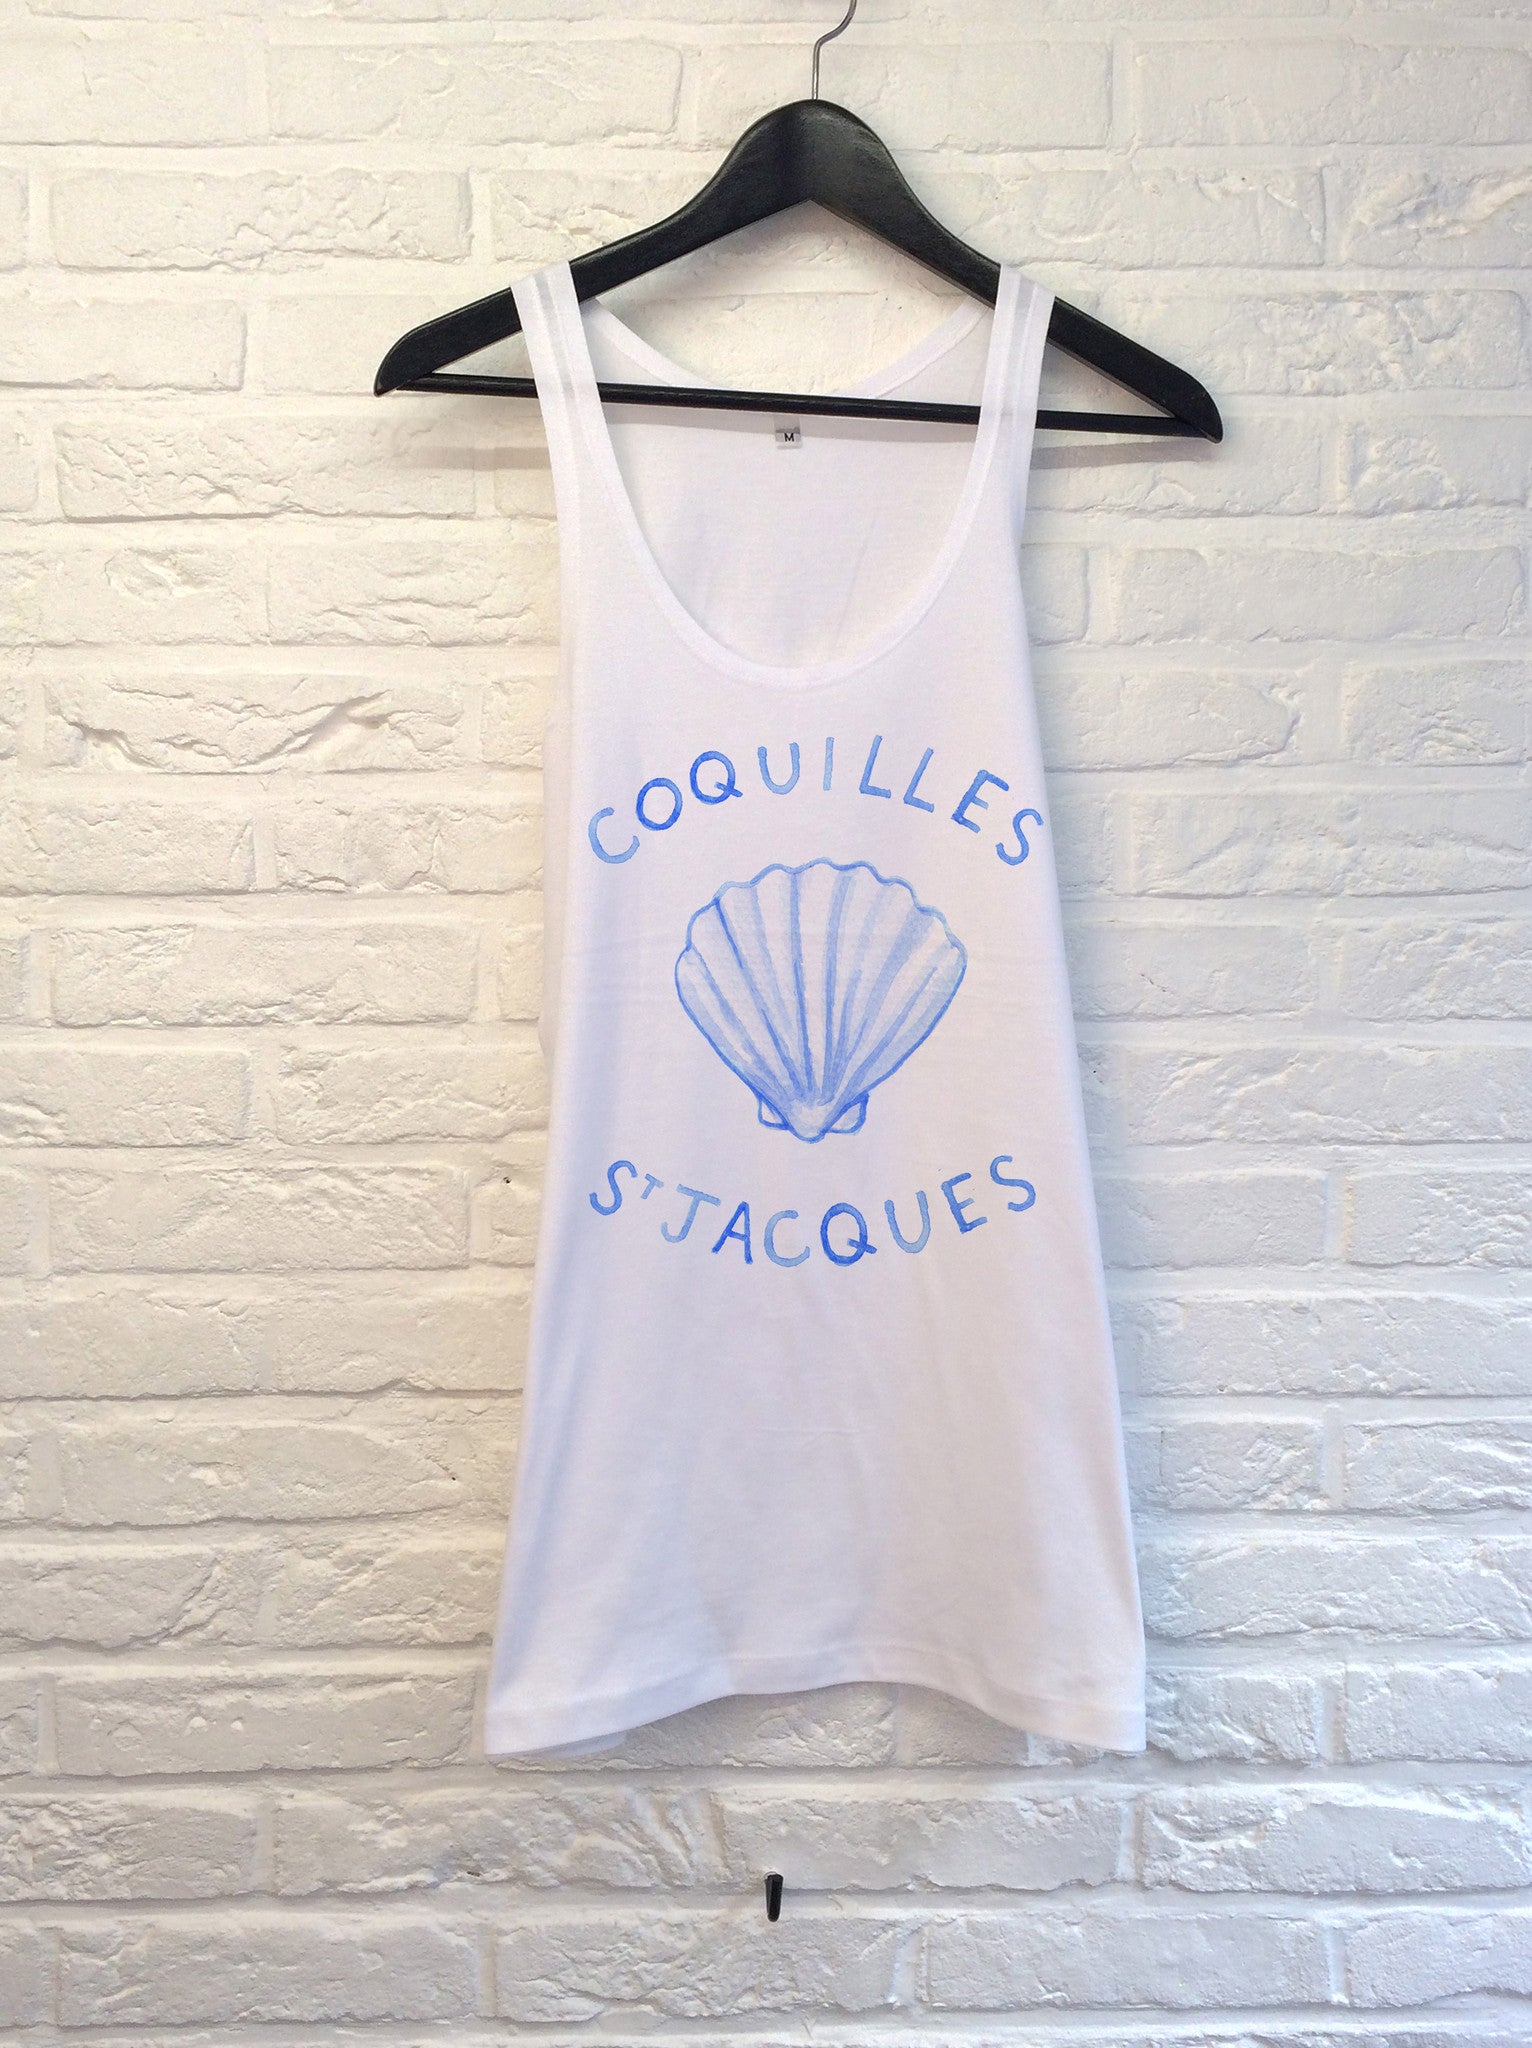 TH Gallery - Coquilles St Jacques - Débardeur-T shirt-Atelier Amelot